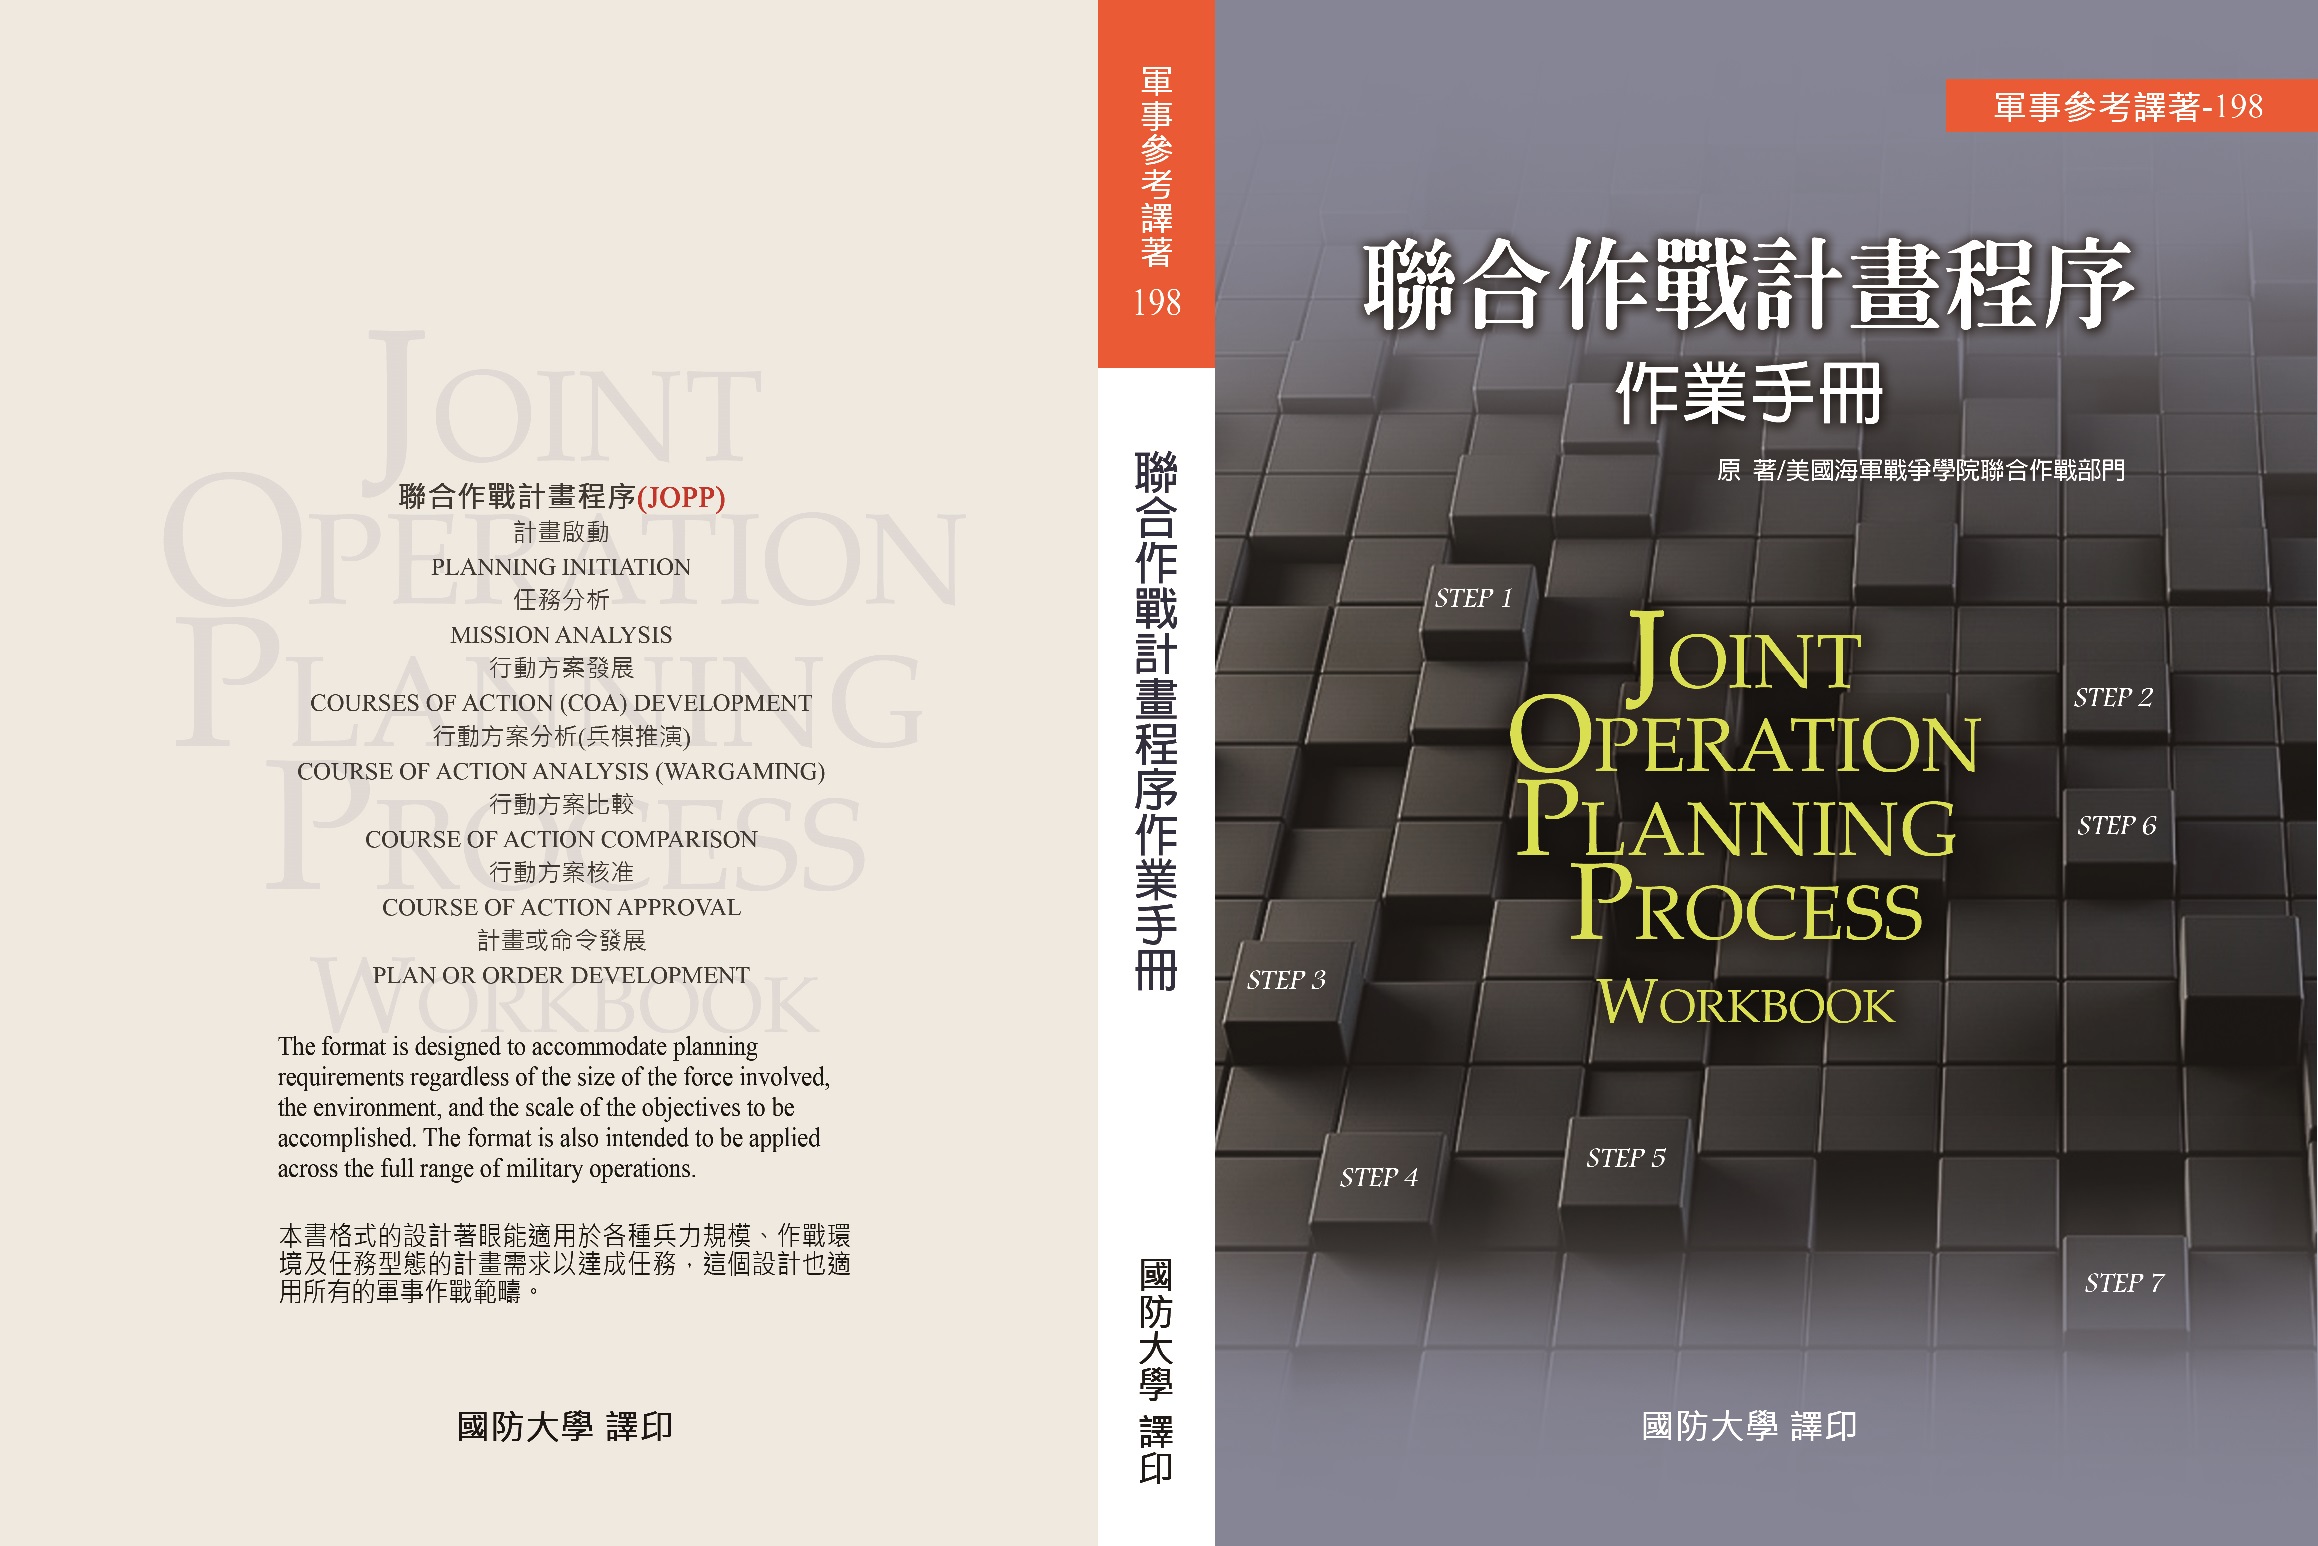 聯合作戰計畫程序作業手冊